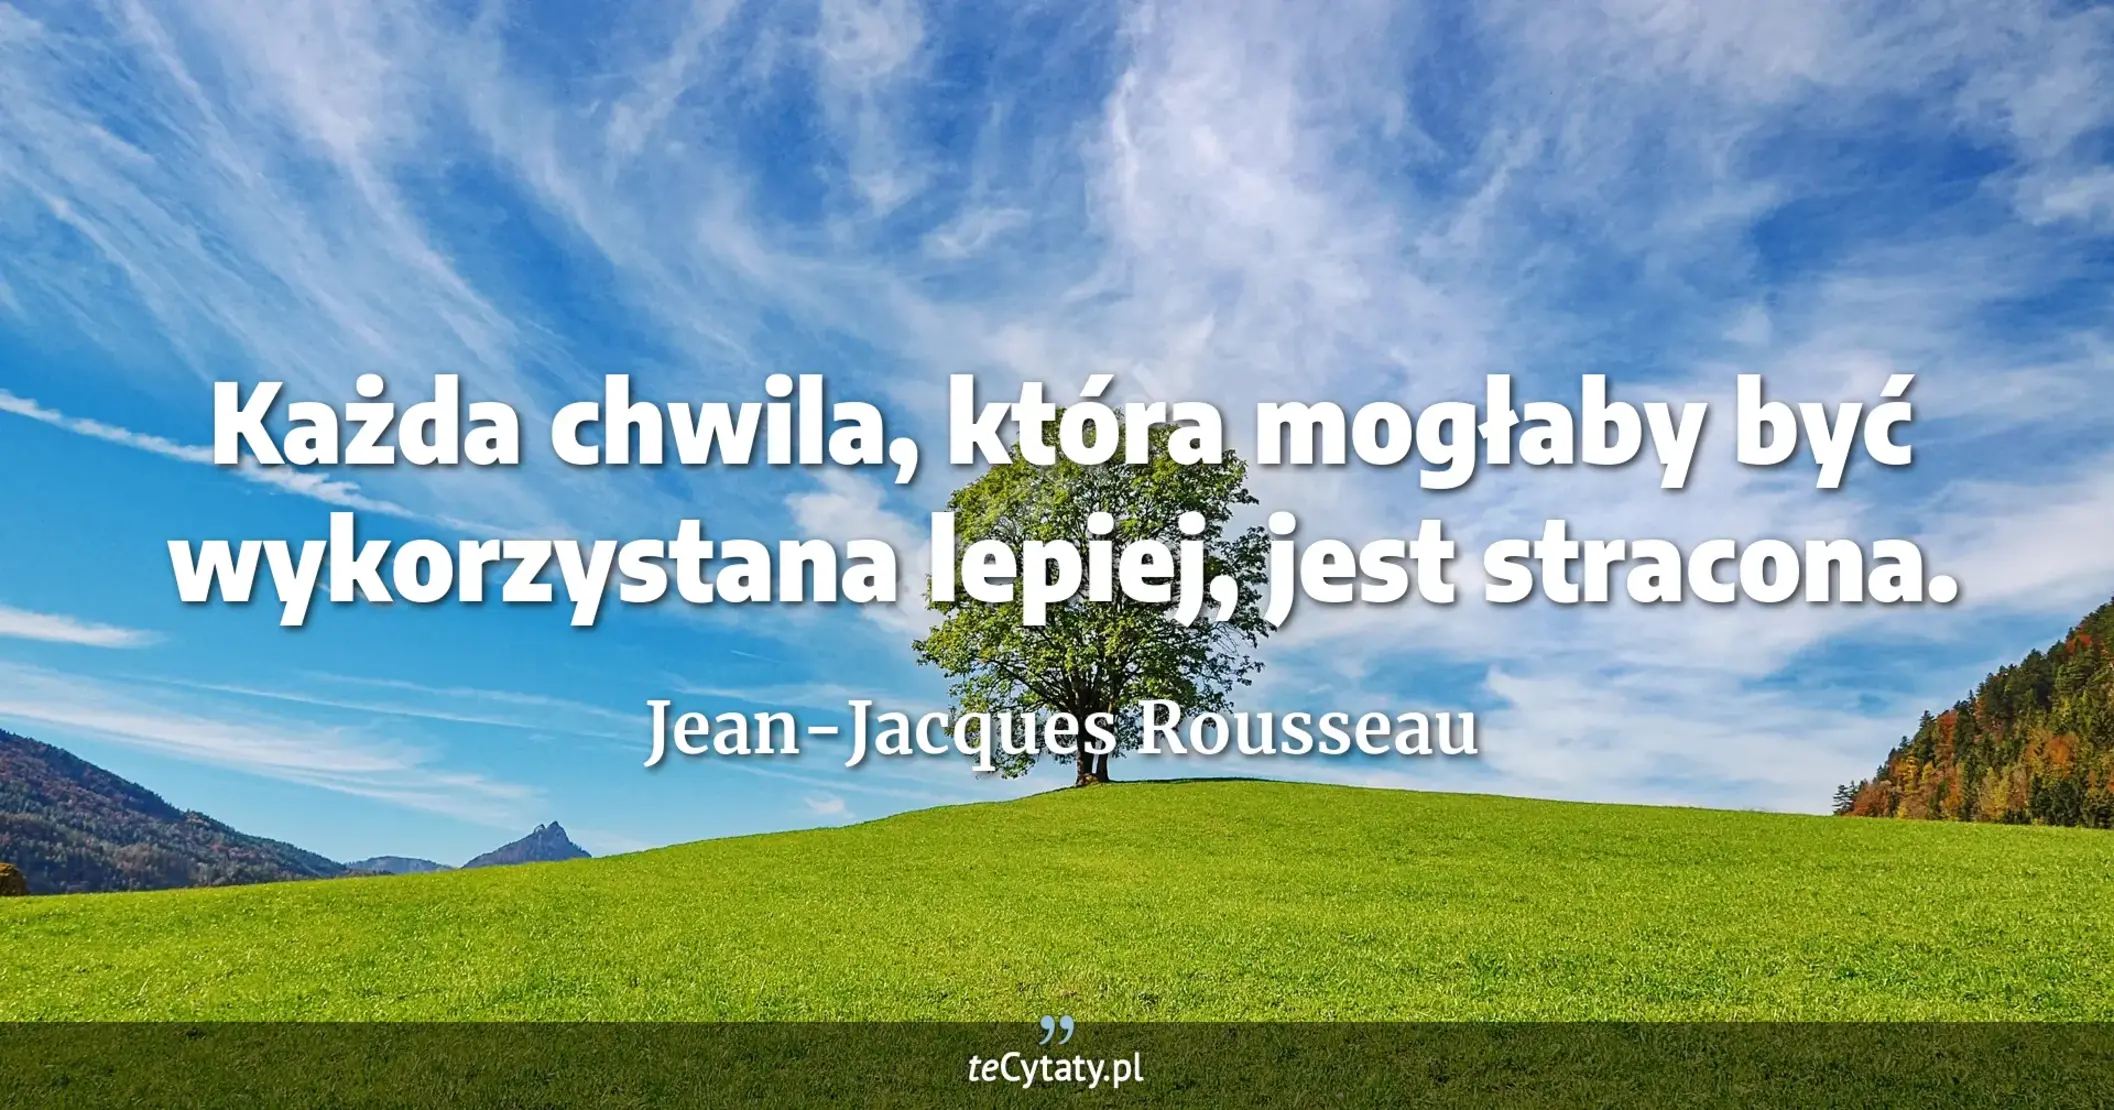 Każda chwila, która mogłaby być wykorzystana lepiej, jest stracona. - Jean-Jacques Rousseau